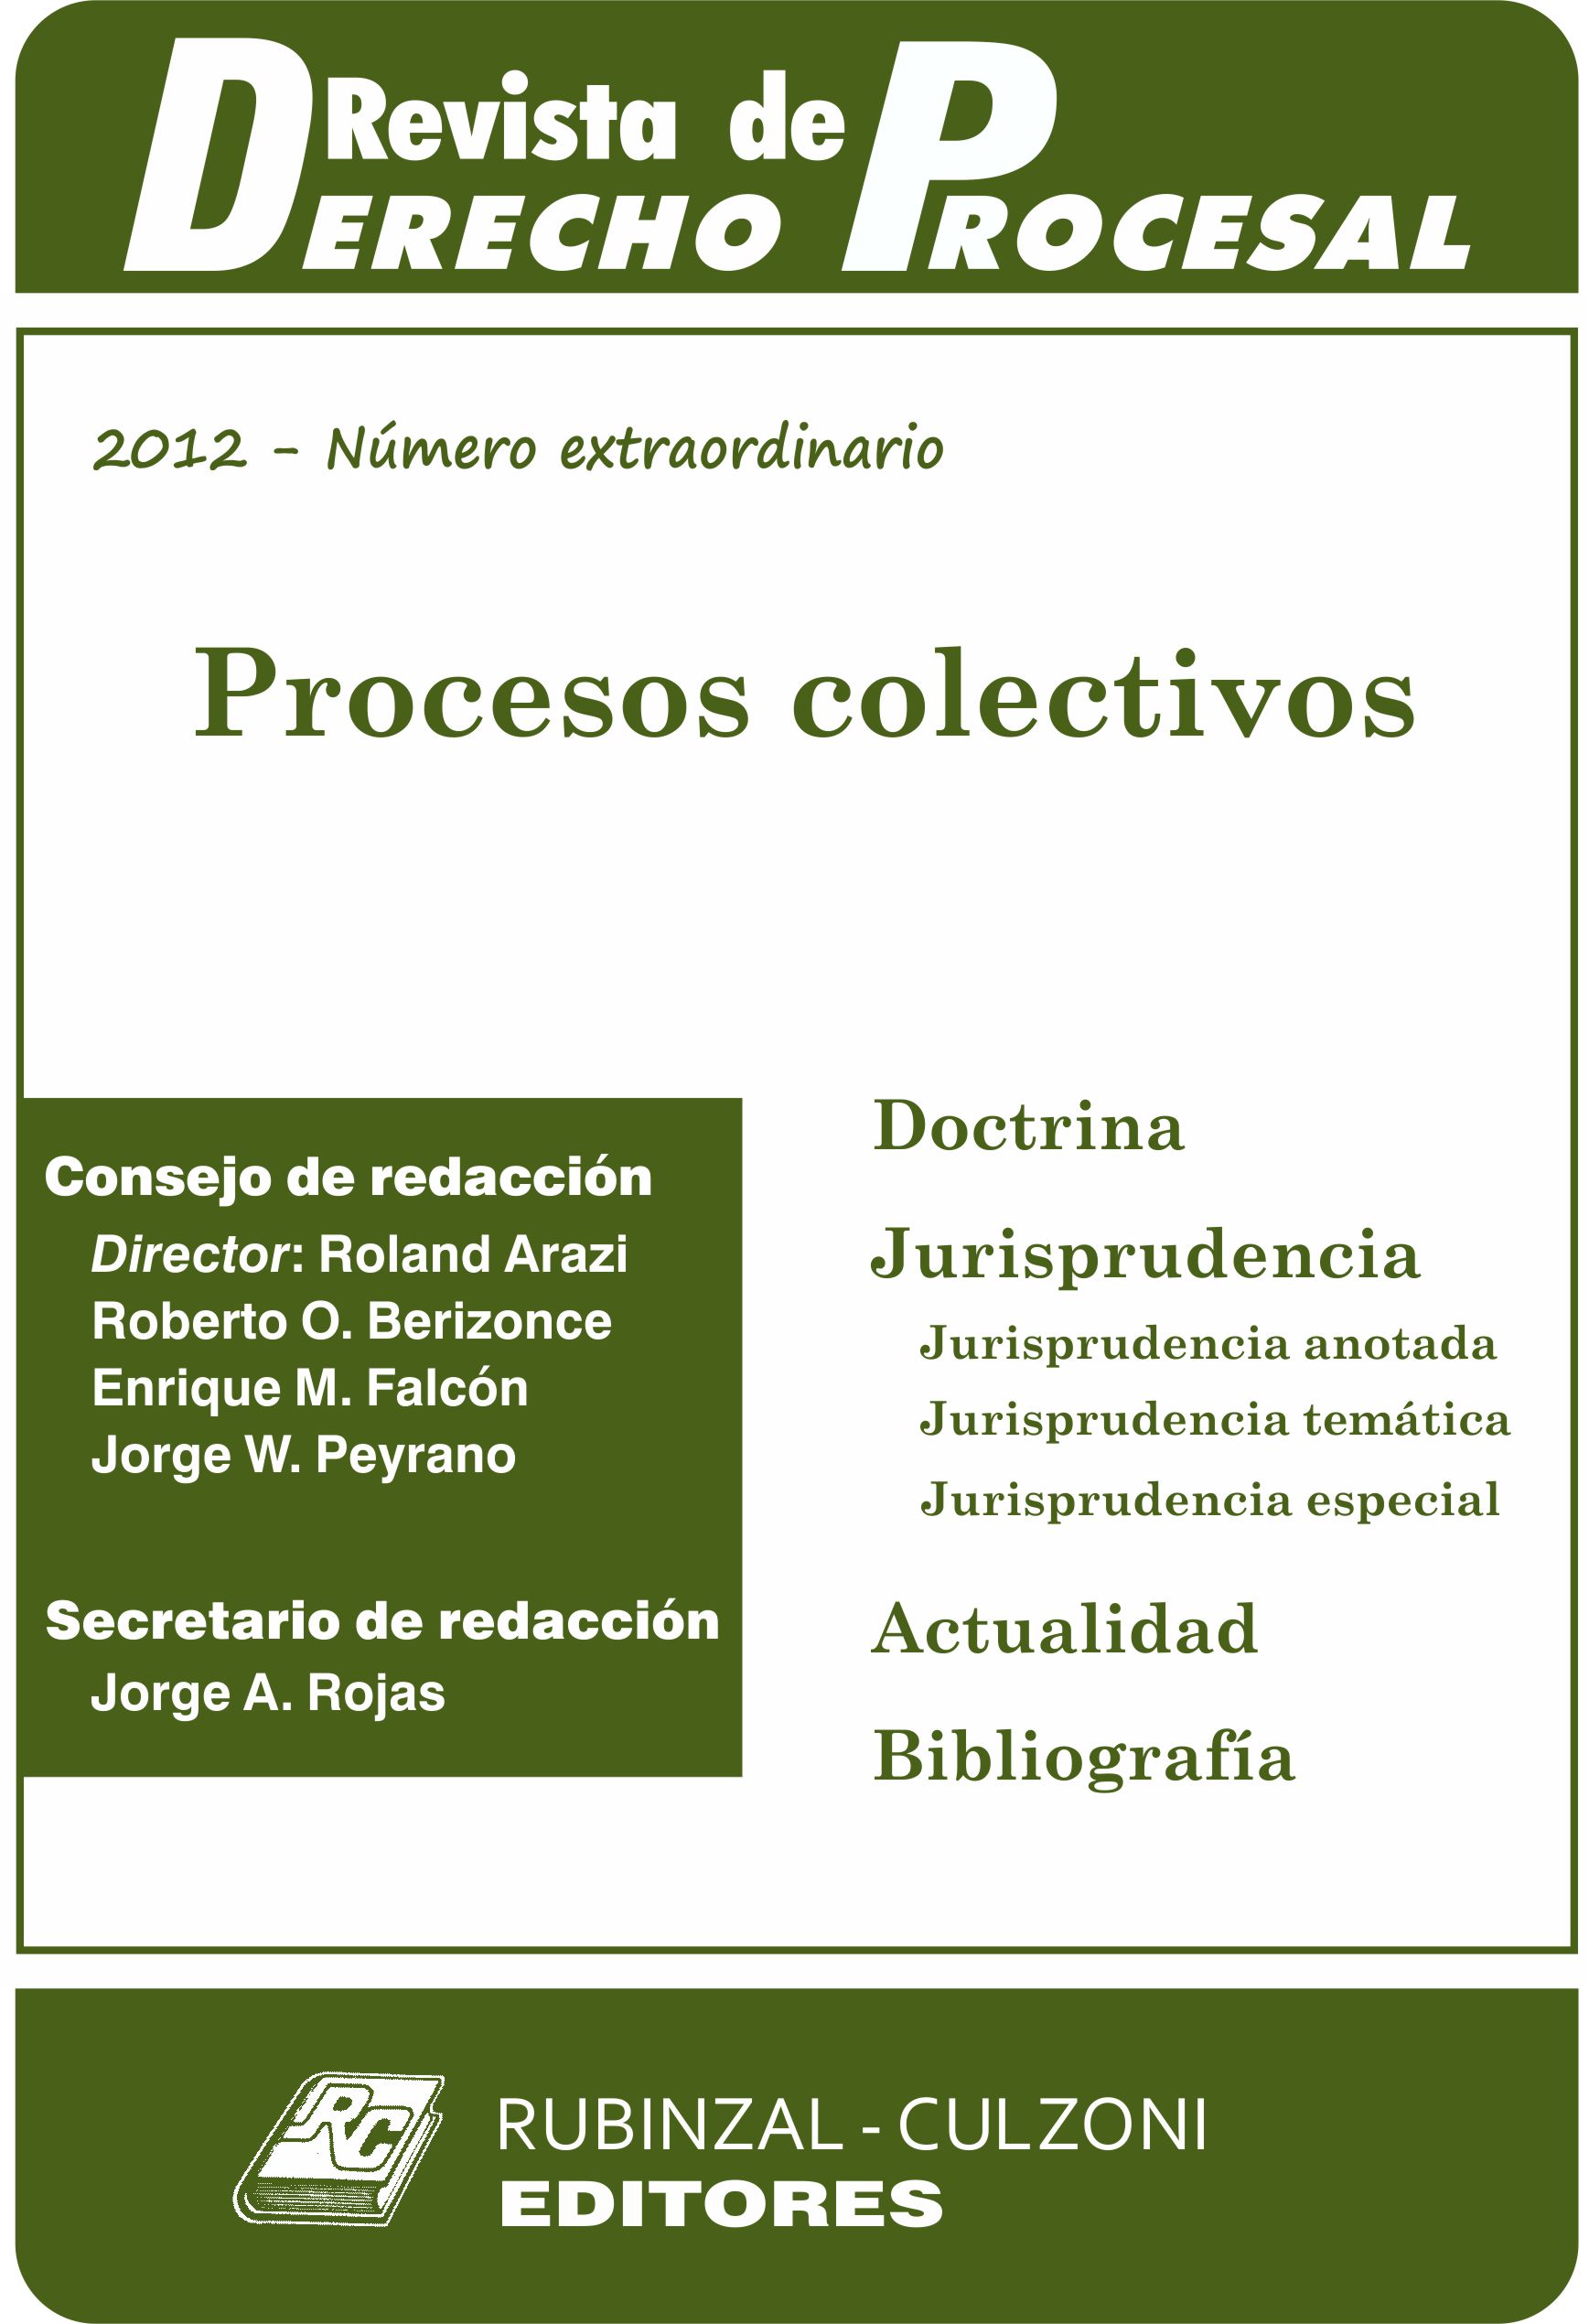 Revista de Derecho Procesal - Número extraordinario - Procesos colectivos